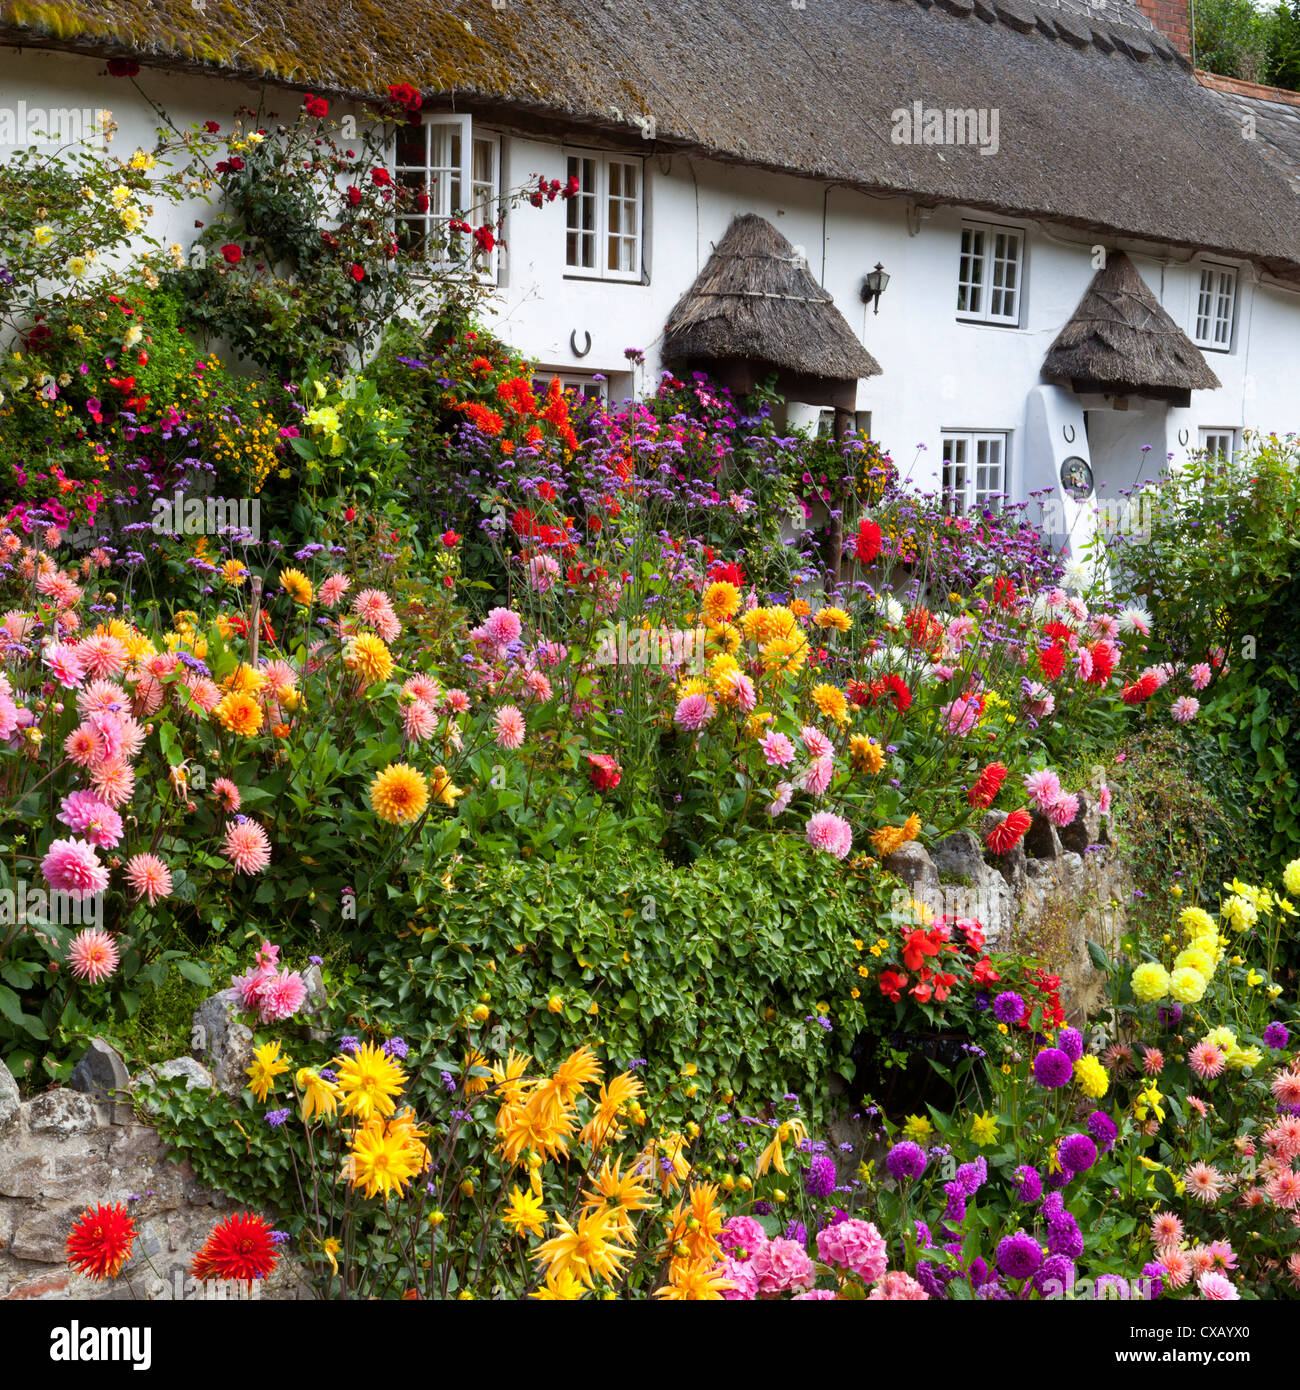 Blume, die konfrontiert strohgedeckten Hütte, Devon, England, Vereinigtes Königreich, Europa Stockfoto